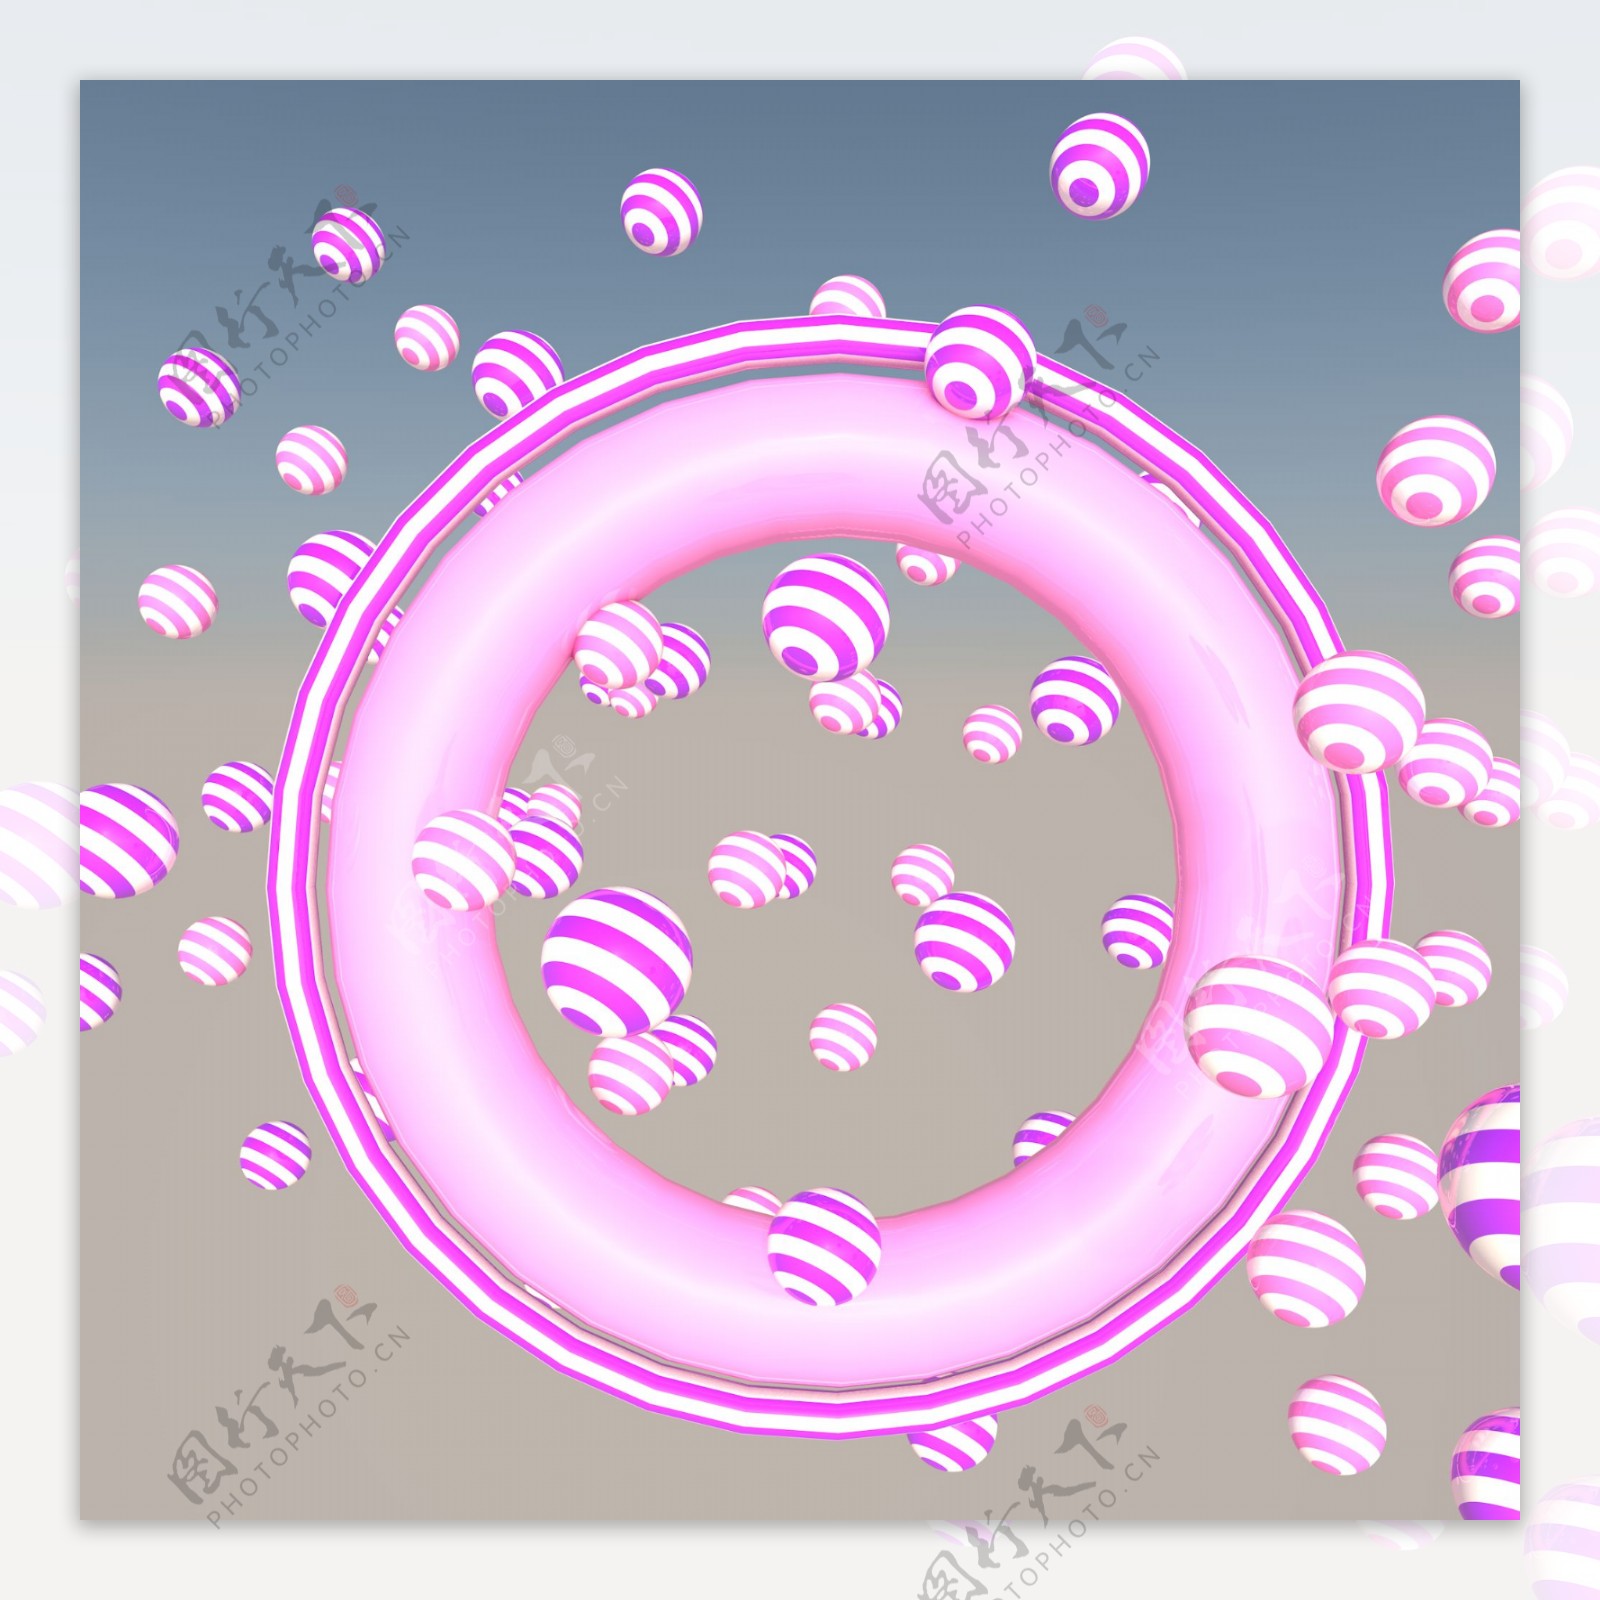 粉色圆球装饰图案